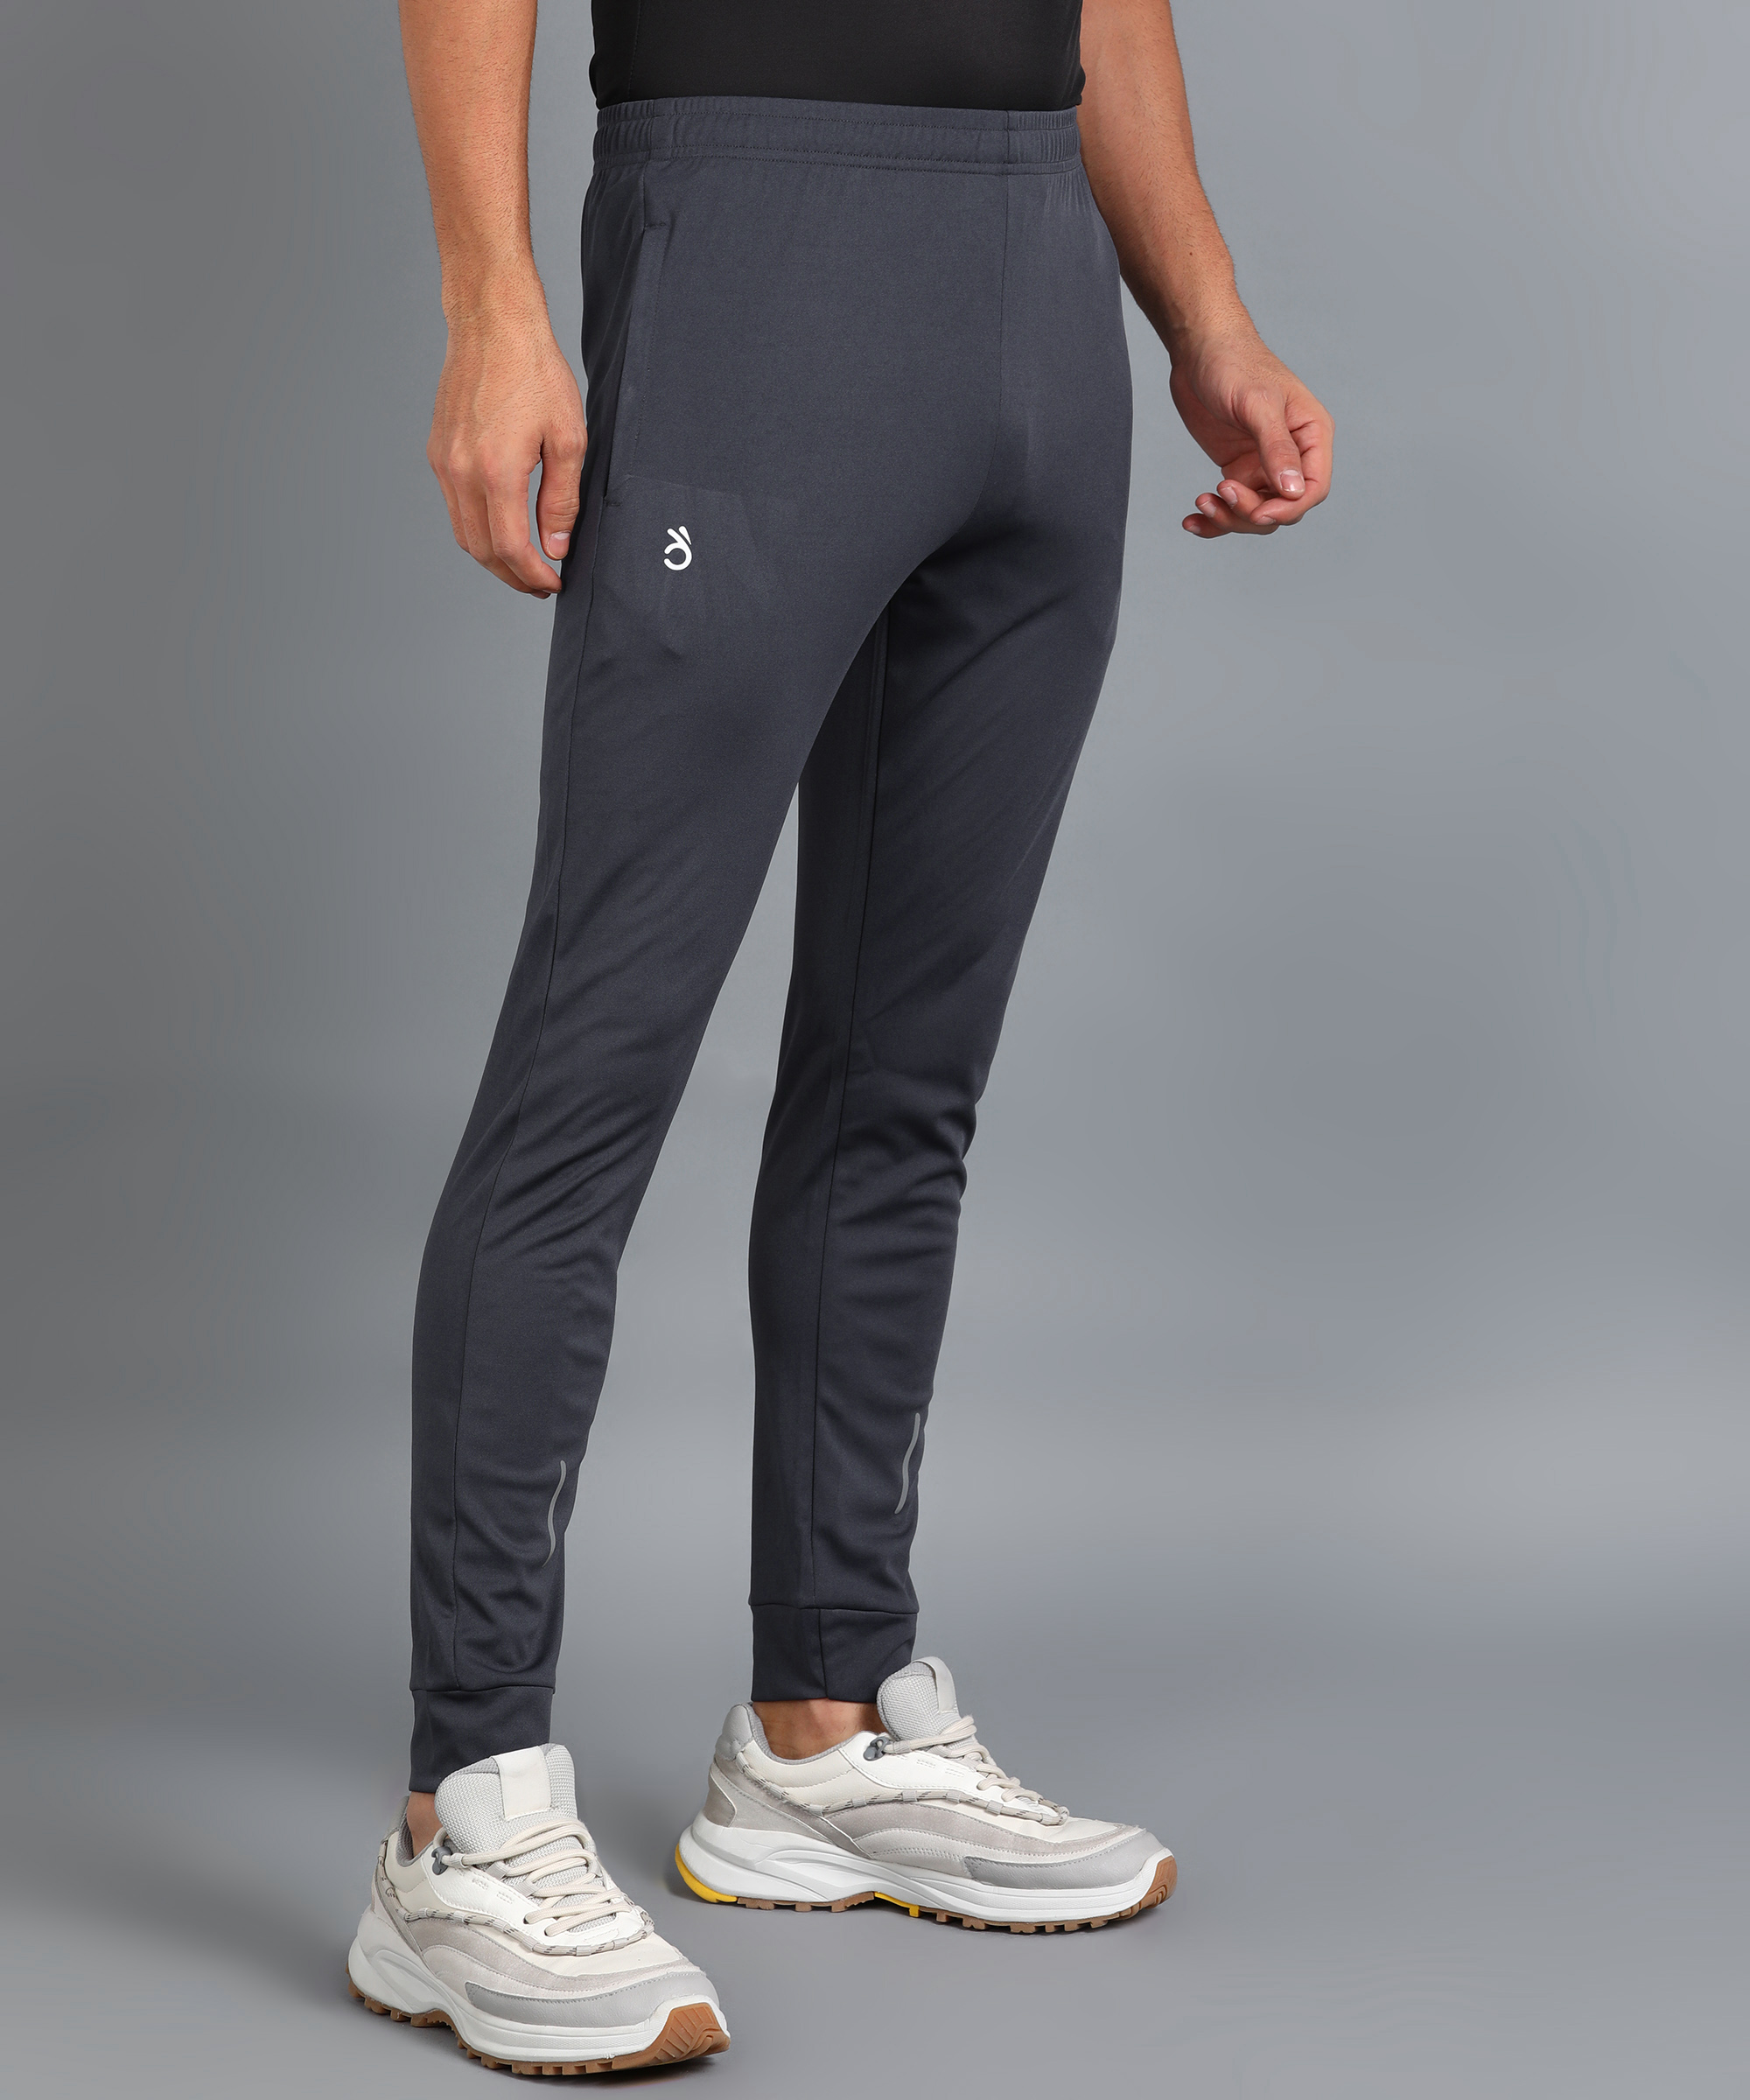 Linsden Polyester Blend Solid Men Track Pants For Men polyester track  paints for man Lower lower for Men Gym Running Jogging Yoga Casual wear   Grey